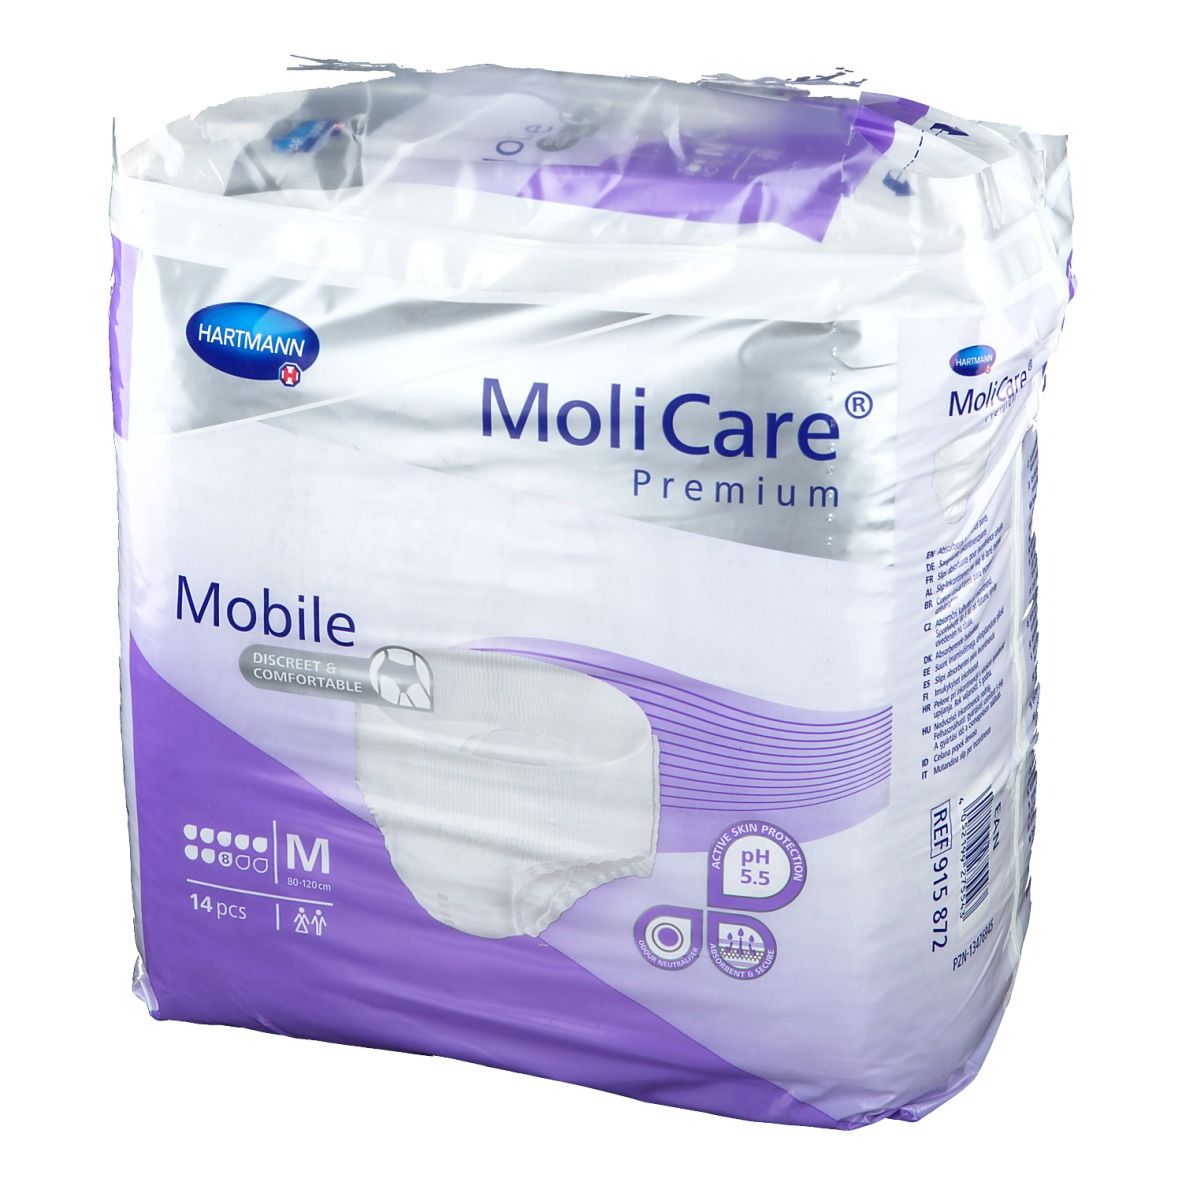 MoliCare® Premium Mobile 8 Tropfen Gr. M